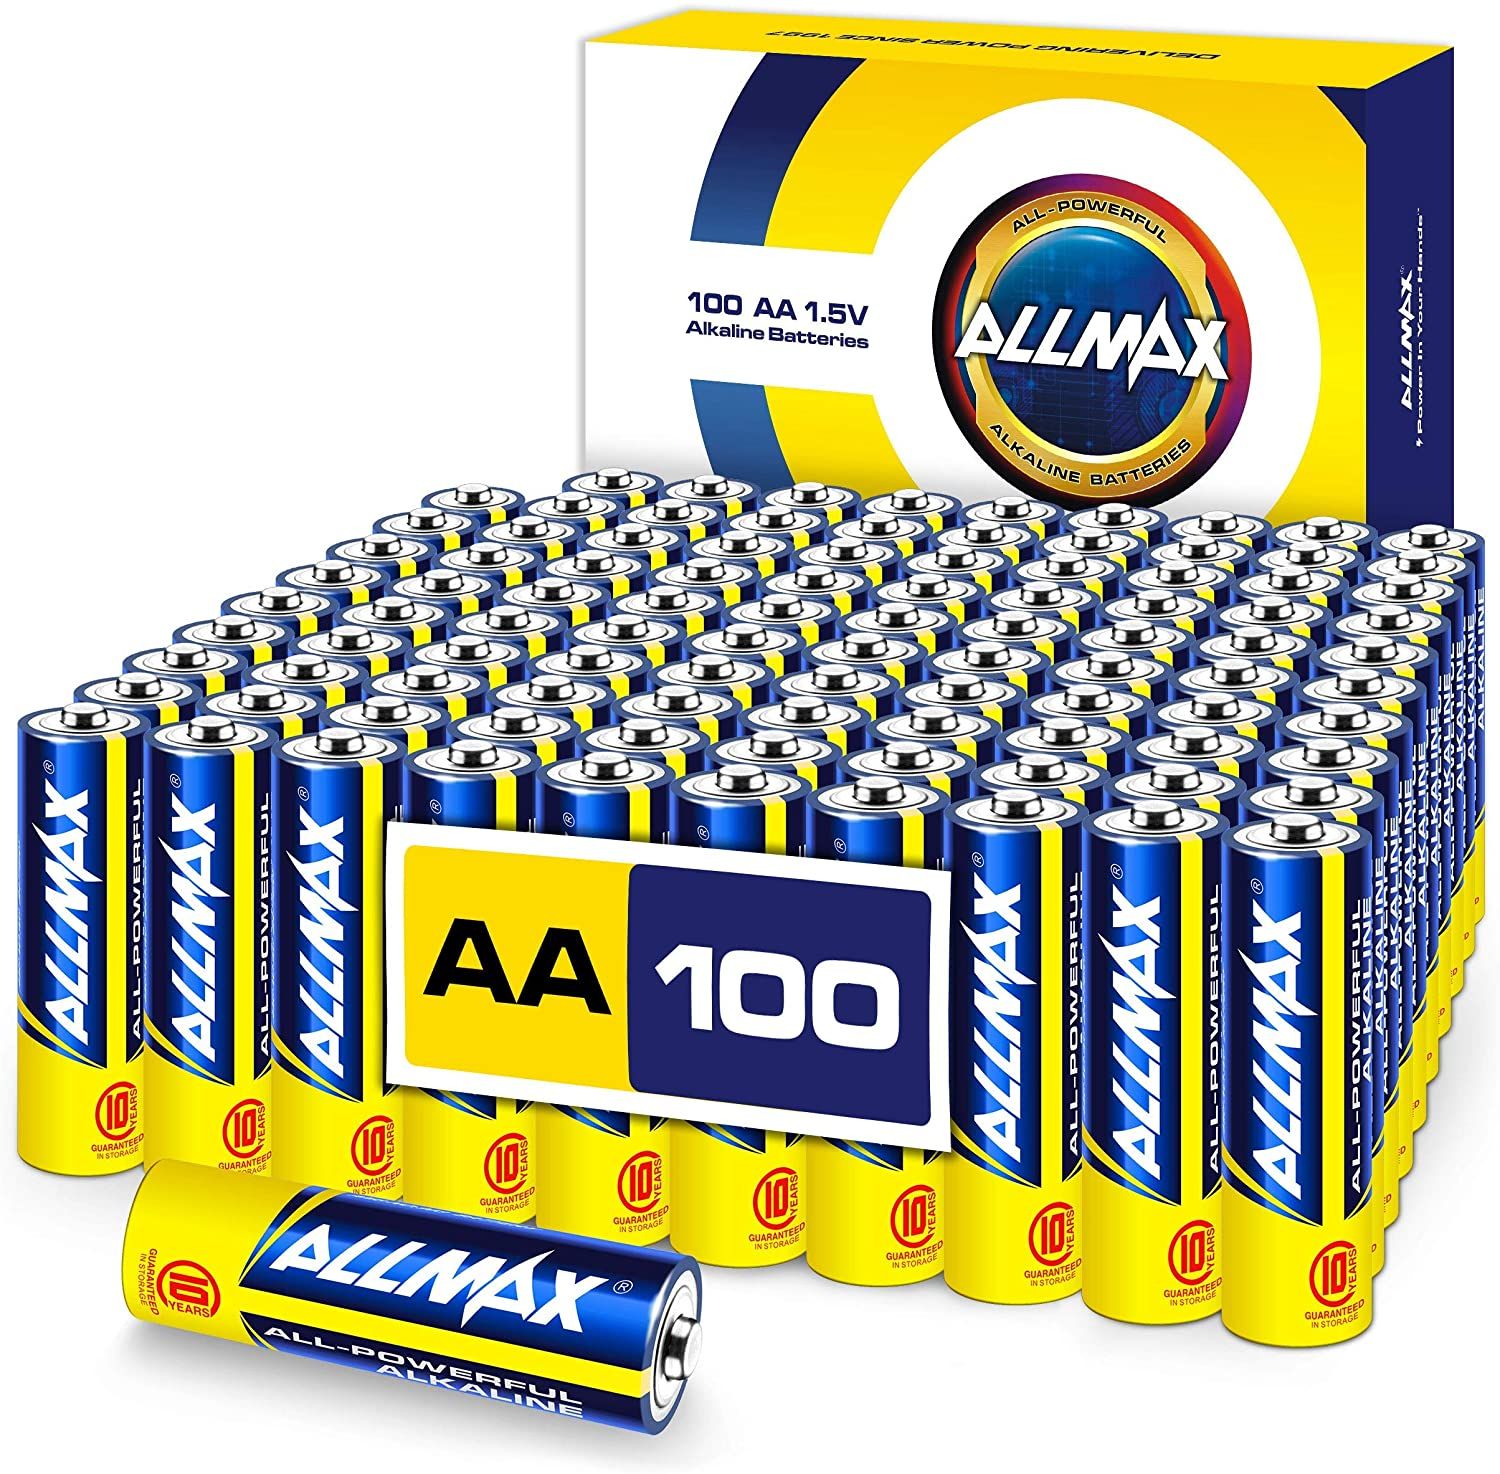 Allmax AA Maximum Power Alkaline Batteries a